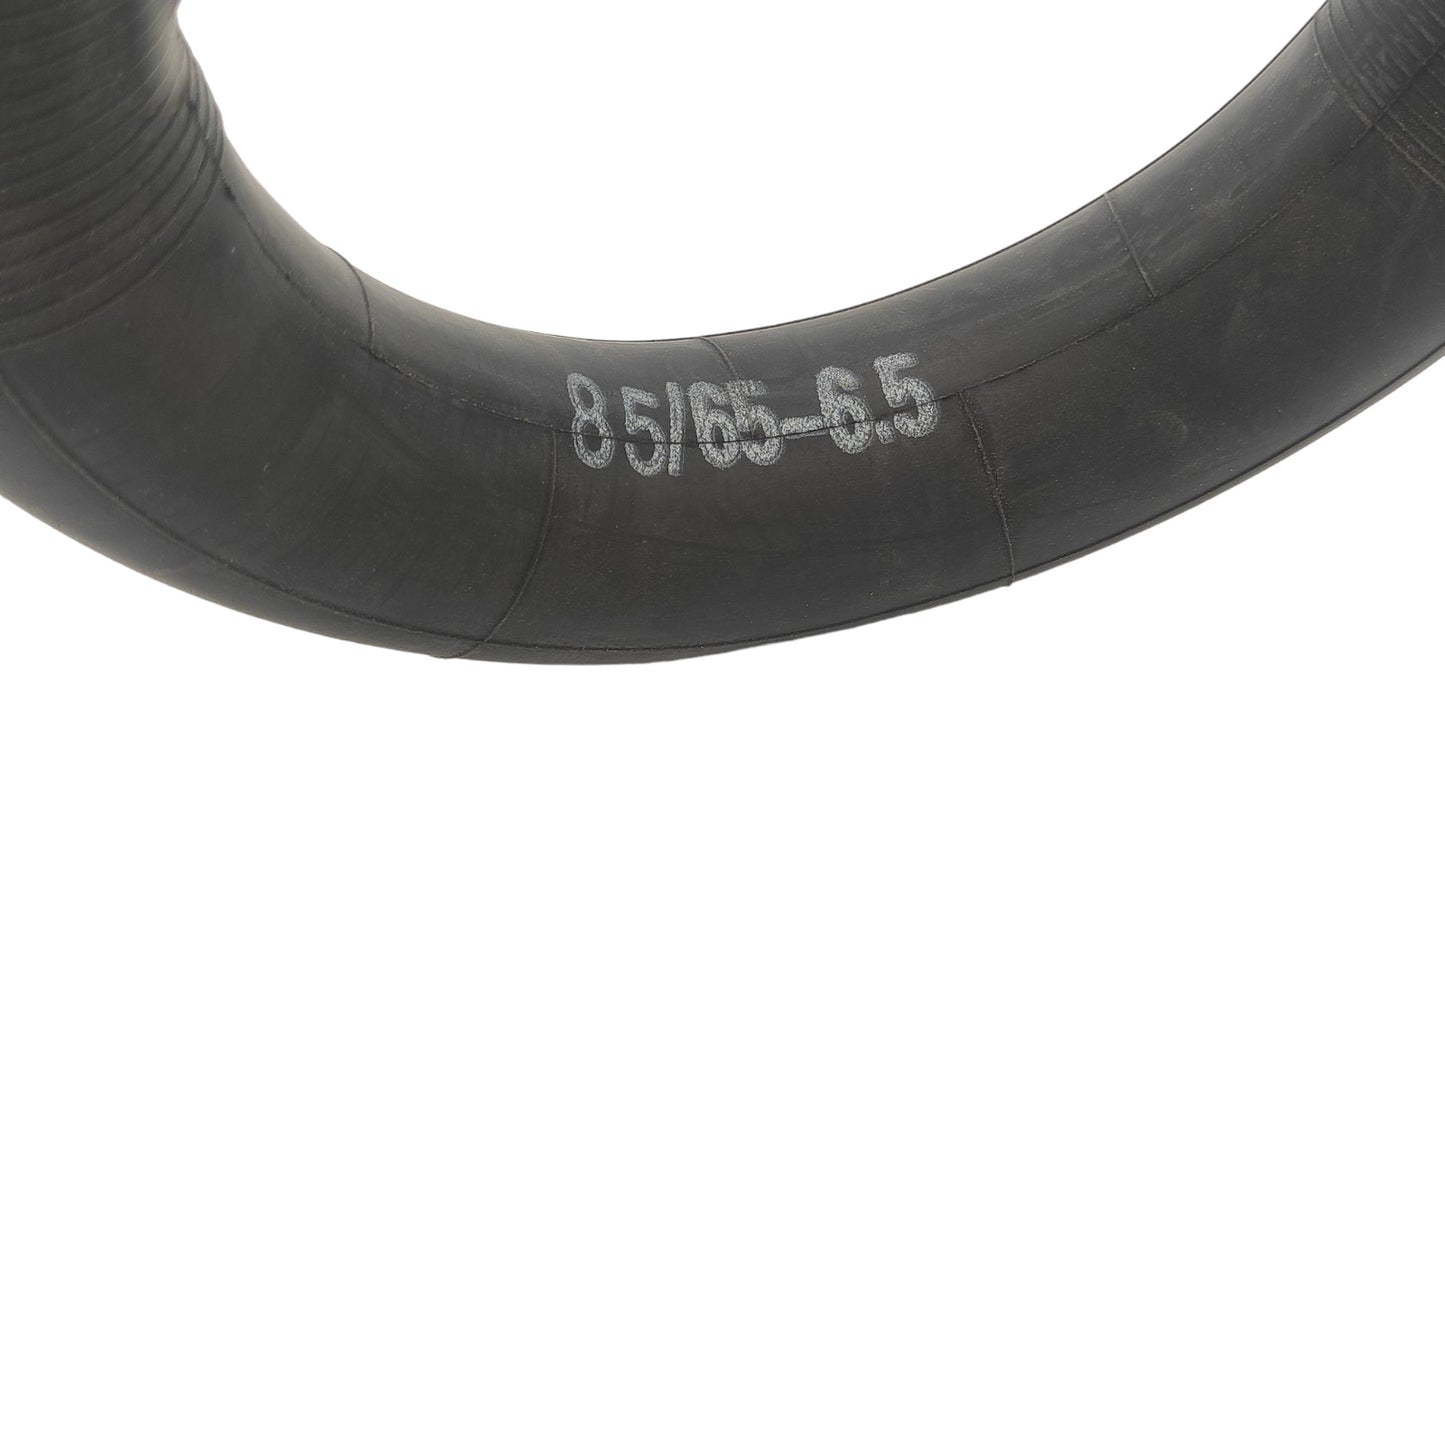 85/65-6.5 90/135° valve hose for e-scooters